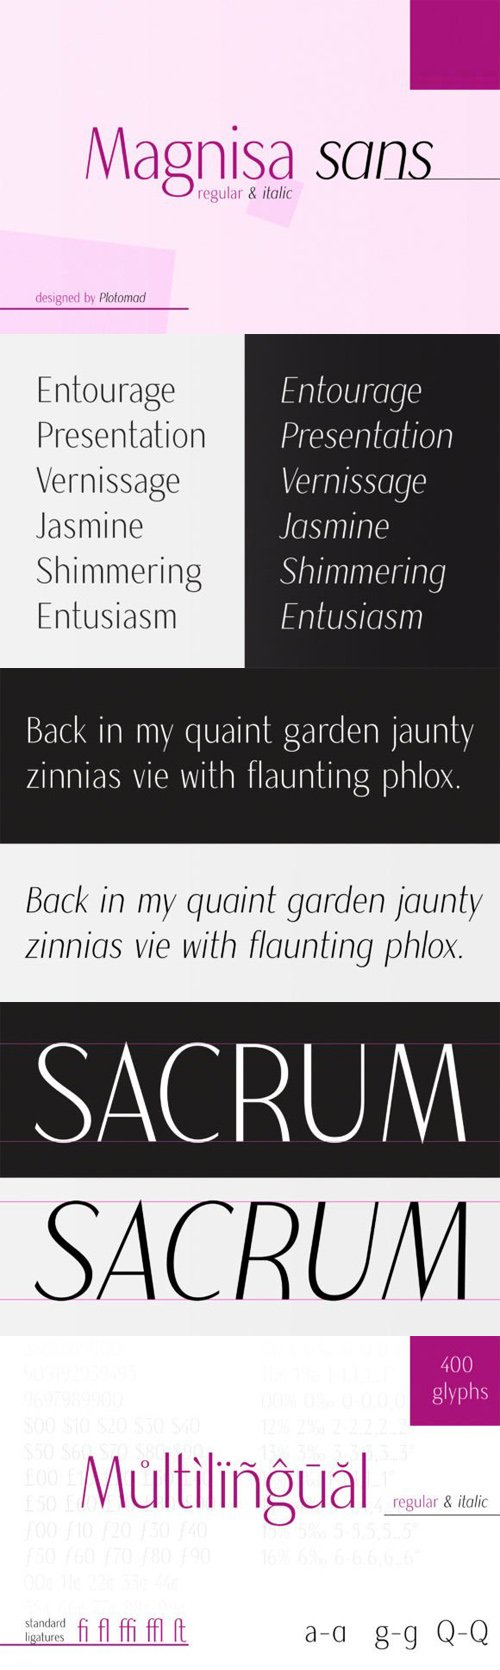 Magnisa Sans - Exquisite & Chic Sans Serif Font